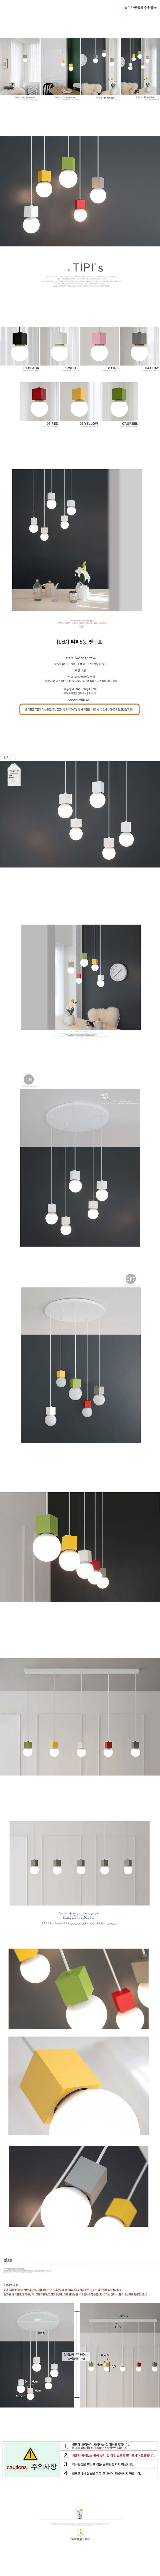 [LED] 티피5등 펜던트(라운드형/일자형)-7color